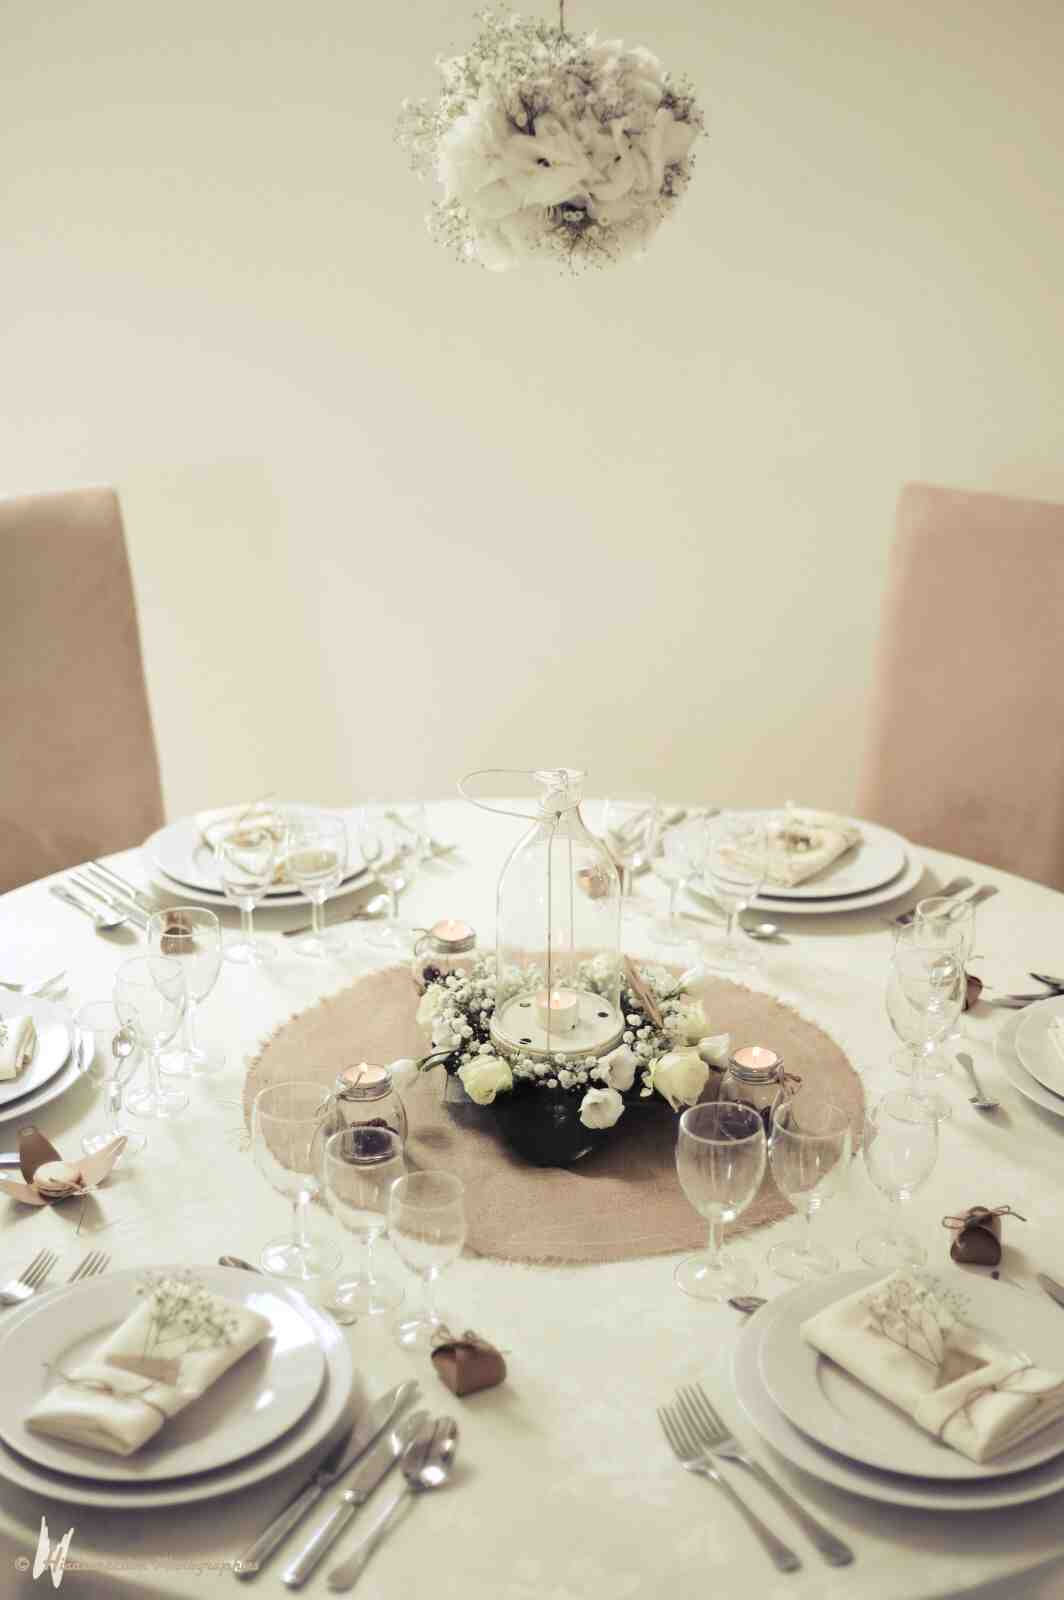 Comment décorer une table ronde pour un mariage ?